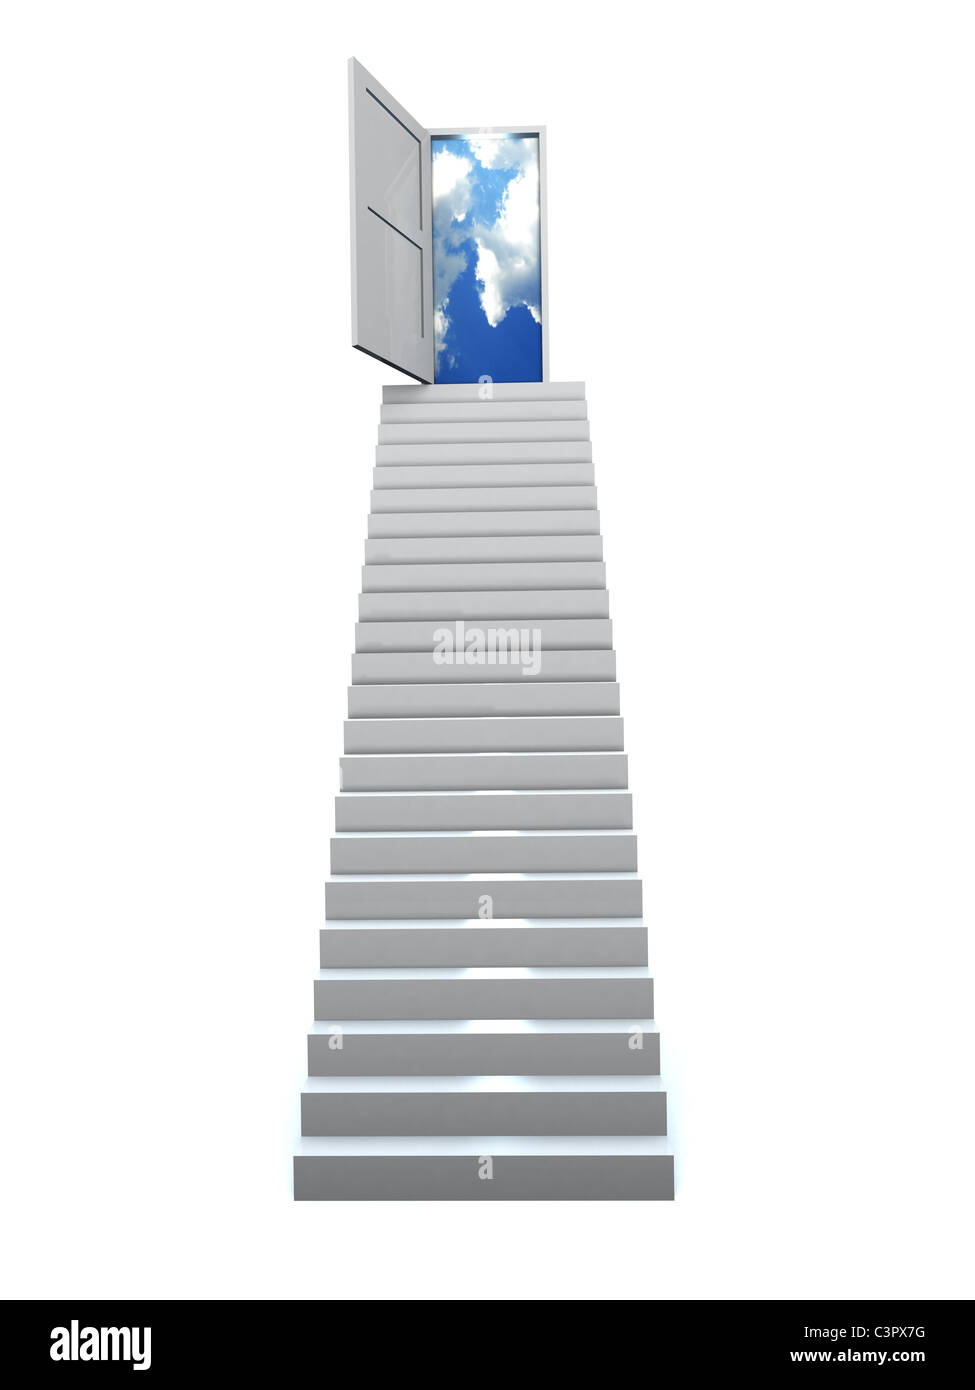 Treppe mit offener Tür zu einem halb bewölkten blauen Himmel. 3D illustration Stockfoto